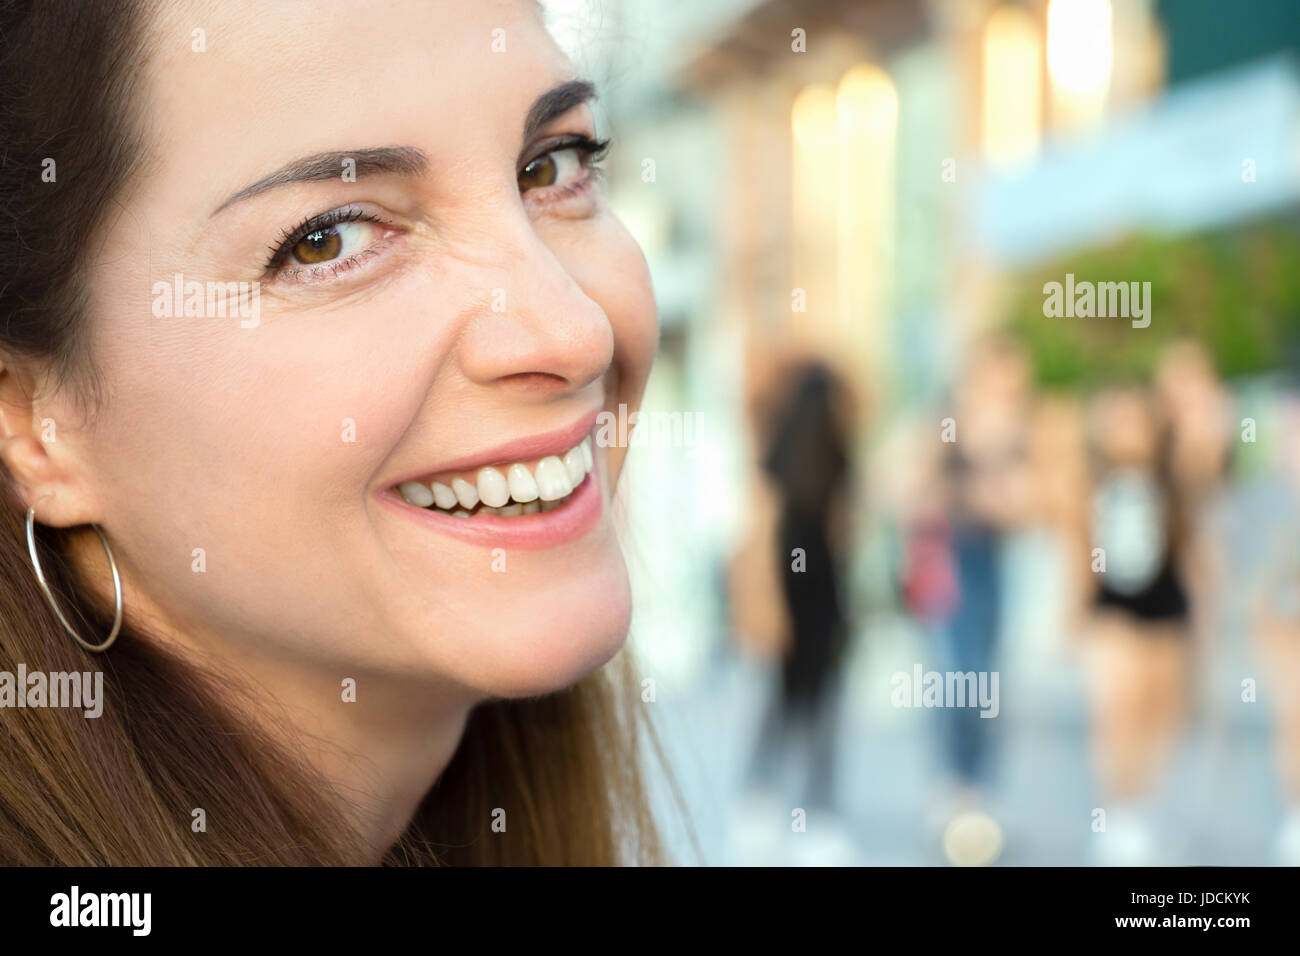 Porträt einer Frau lächelnd, fröhlich, an der Kamera, closeup suchen, im freien Hintergrund. Stockfoto